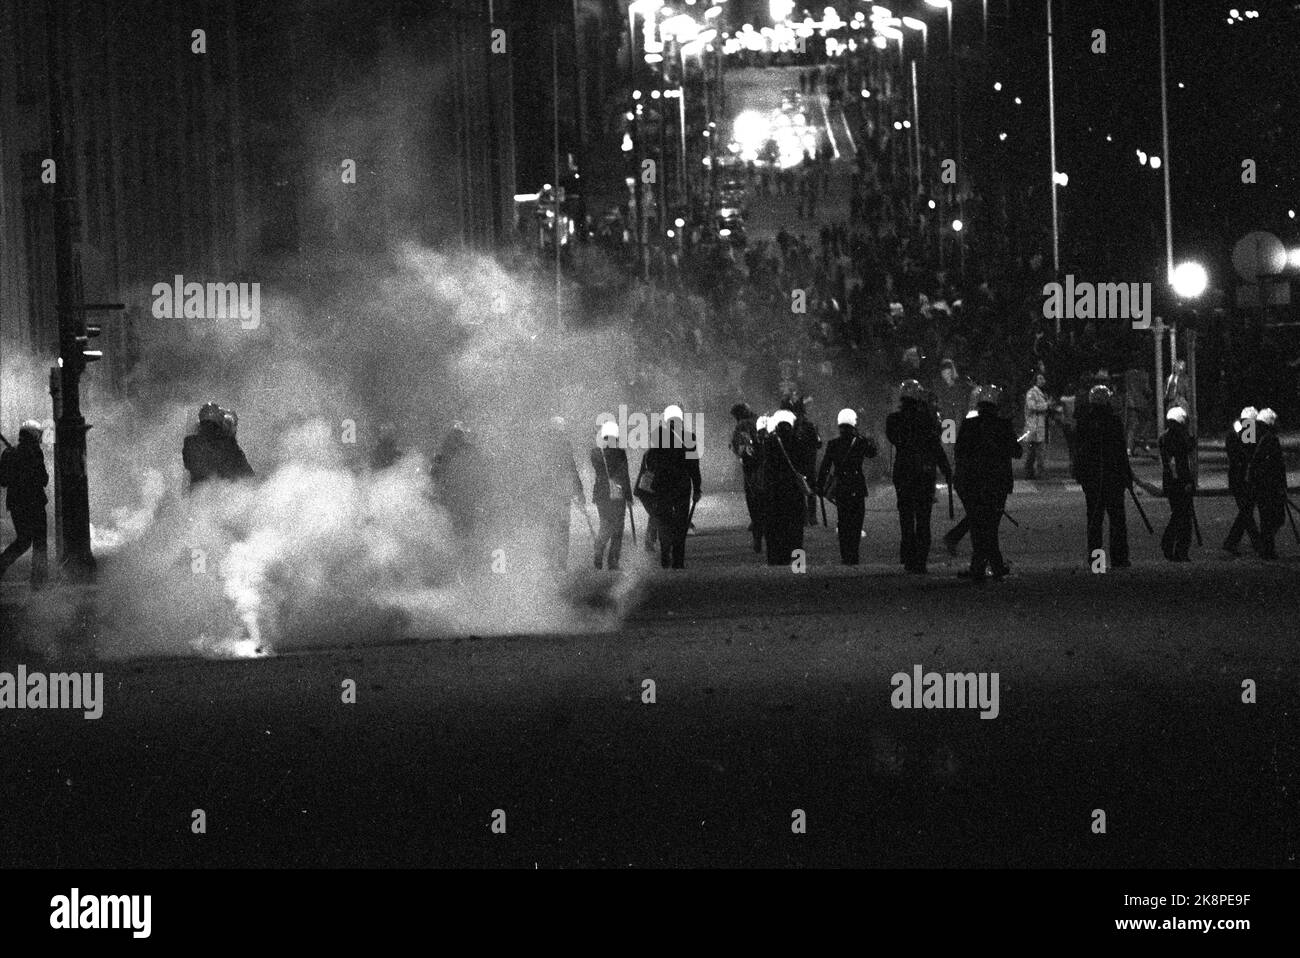 Oslo 19800501 tumulti nel centro di Oslo notte fino al 1st maggio. La polizia ha usato gas lacrimogeni contro le bande giovanili durante i disordini. Foto Erik Thorberg / NTB / NTB Foto Stock